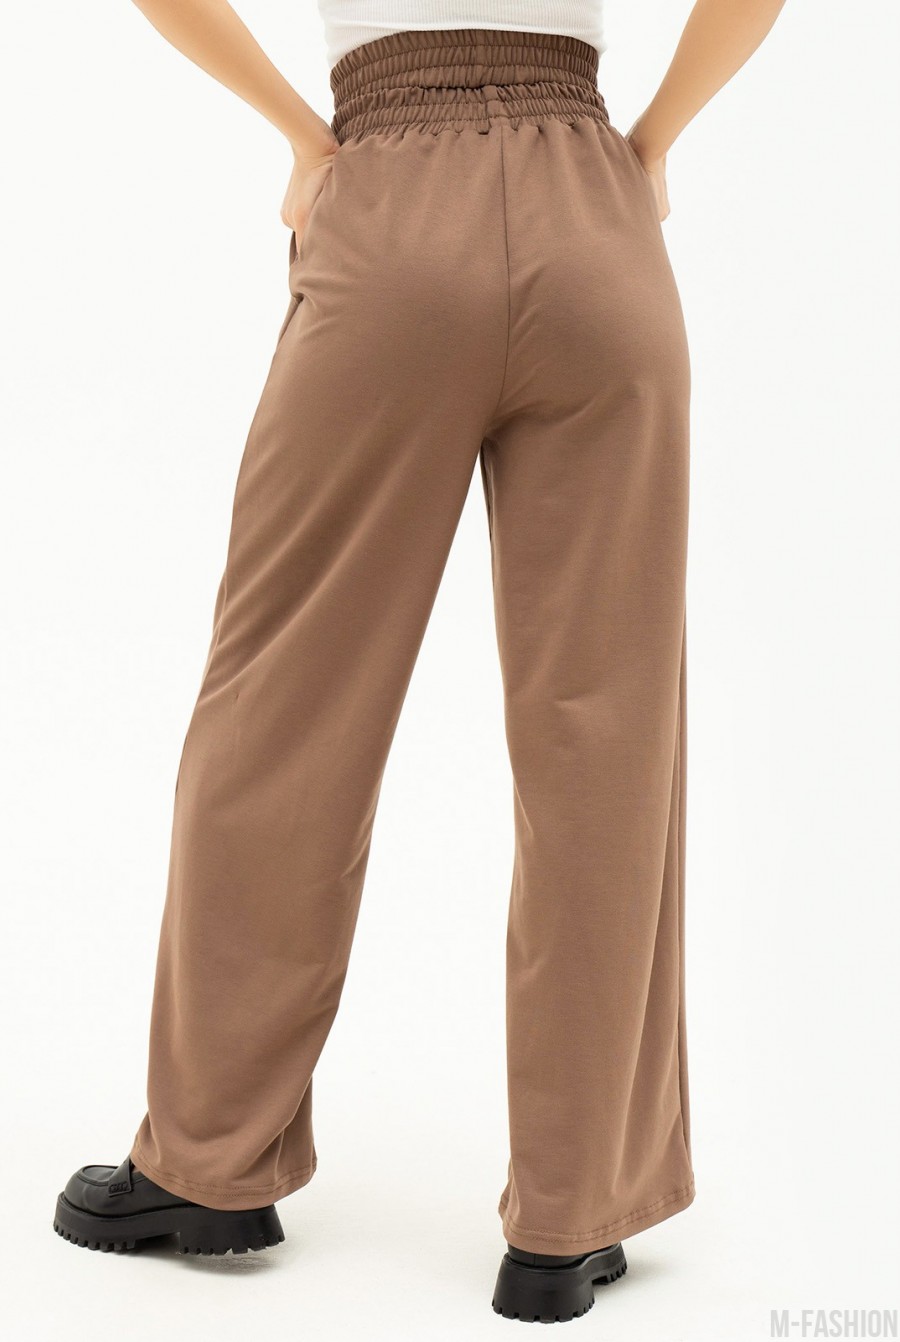 Бежевые свободные брюки с двойной резинкой - Фото 3